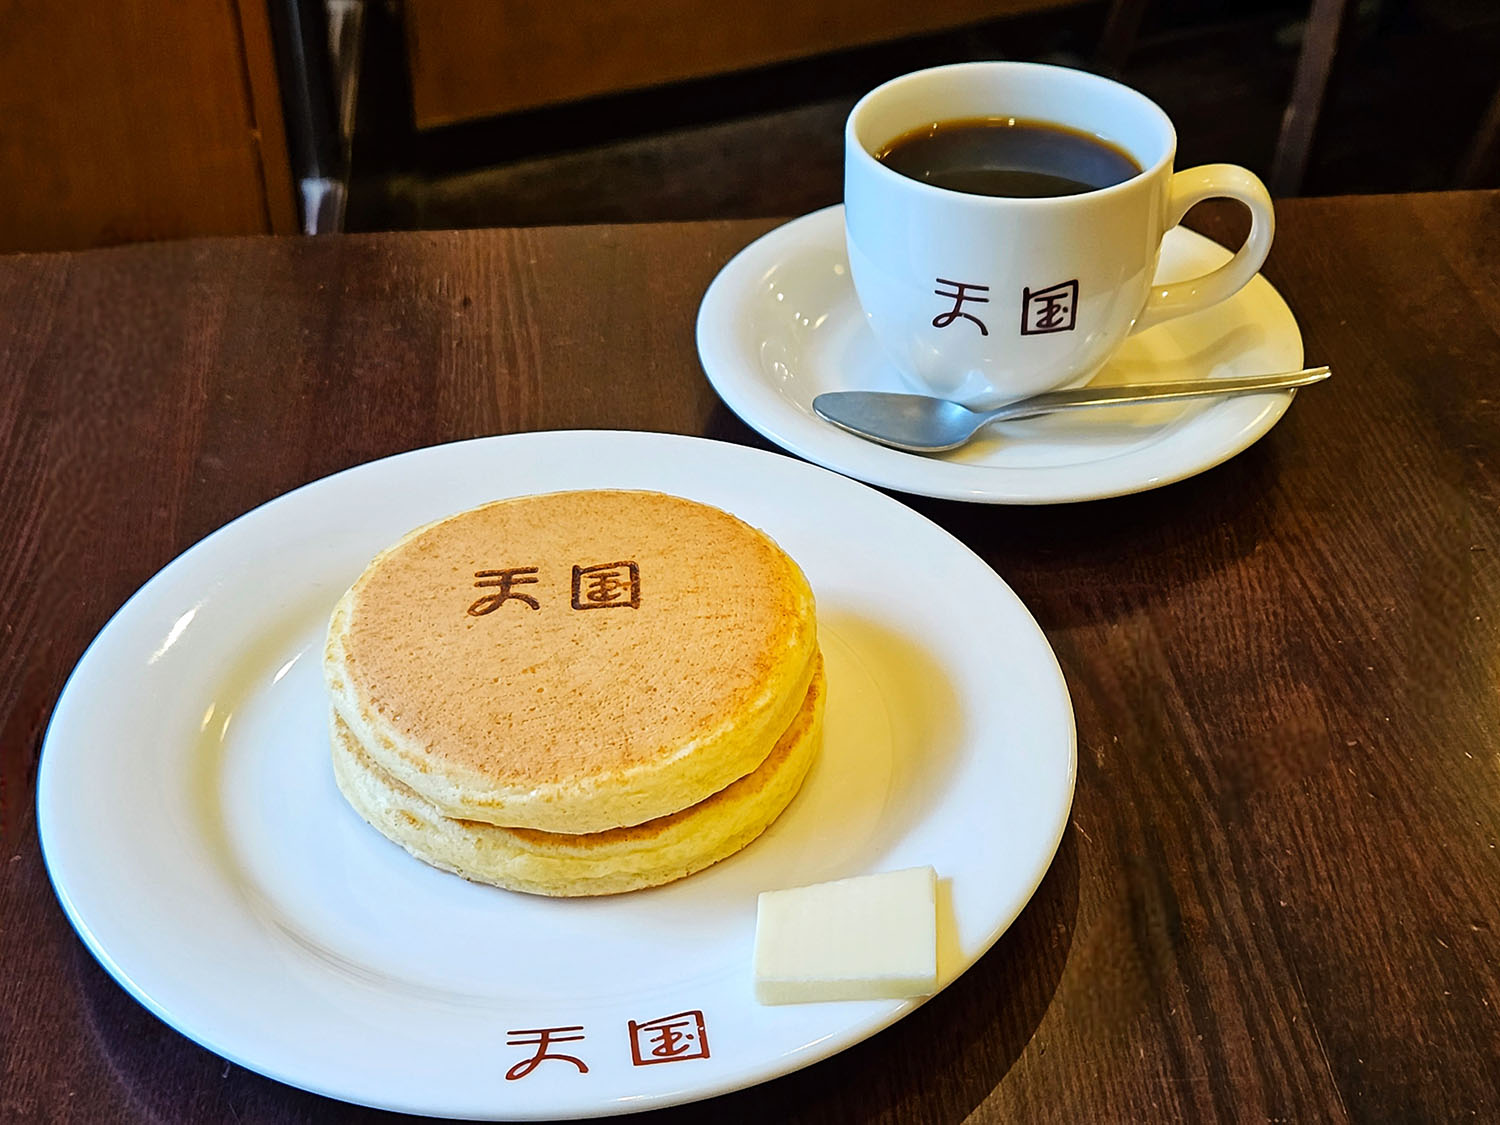 珈琲天国特製ホットケーキ 単品680円、セット1300円(コーヒーor紅茶付き)。